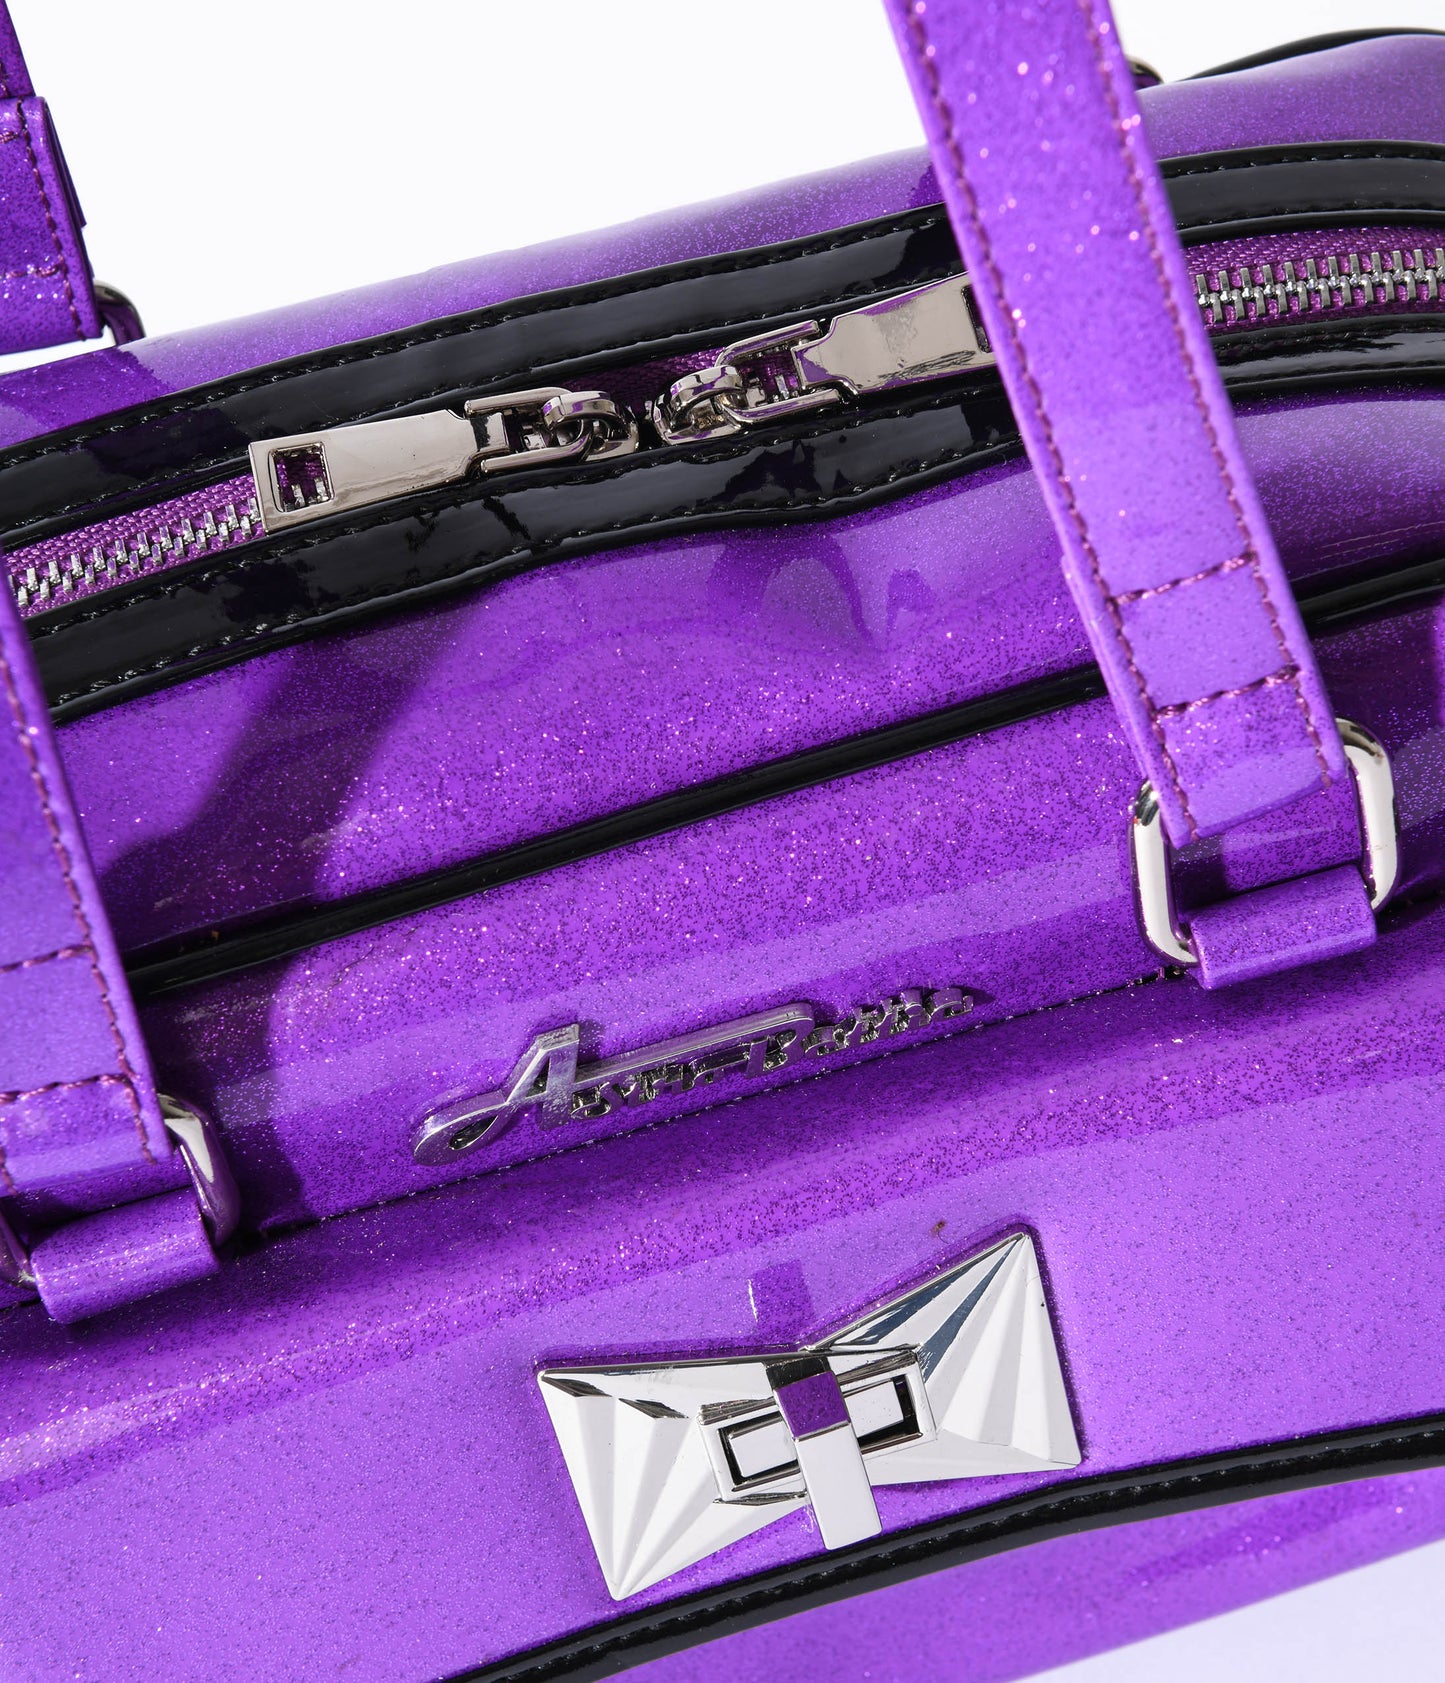 Violet Galaxy Sparkle Handbag - Unique Vintage - Womens, ACCESSORIES, HANDBAGS